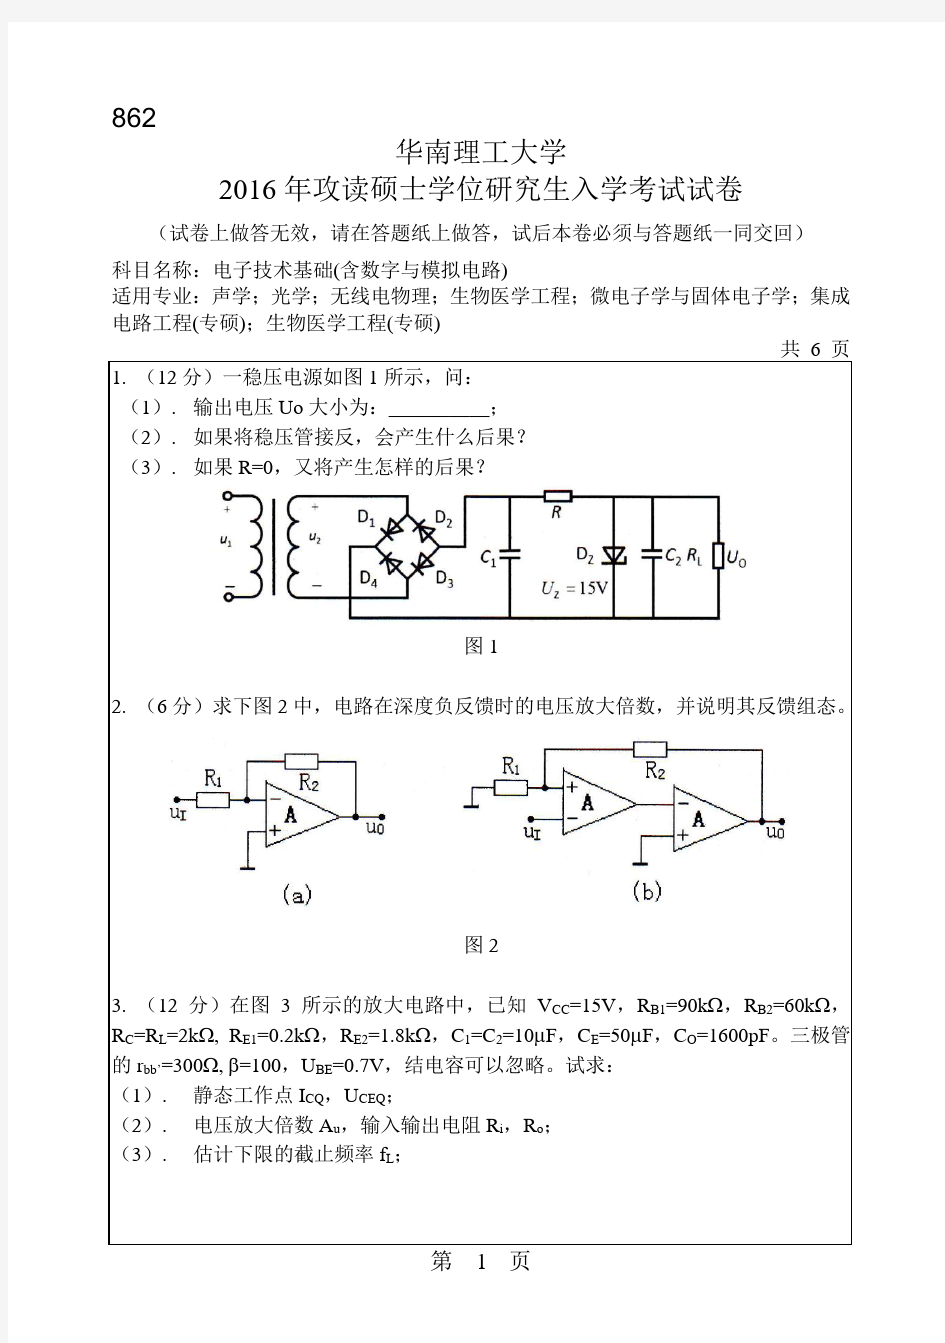 华南理工大学考研试题2016年-2018年862电子技术基础(含数字与模拟电路)